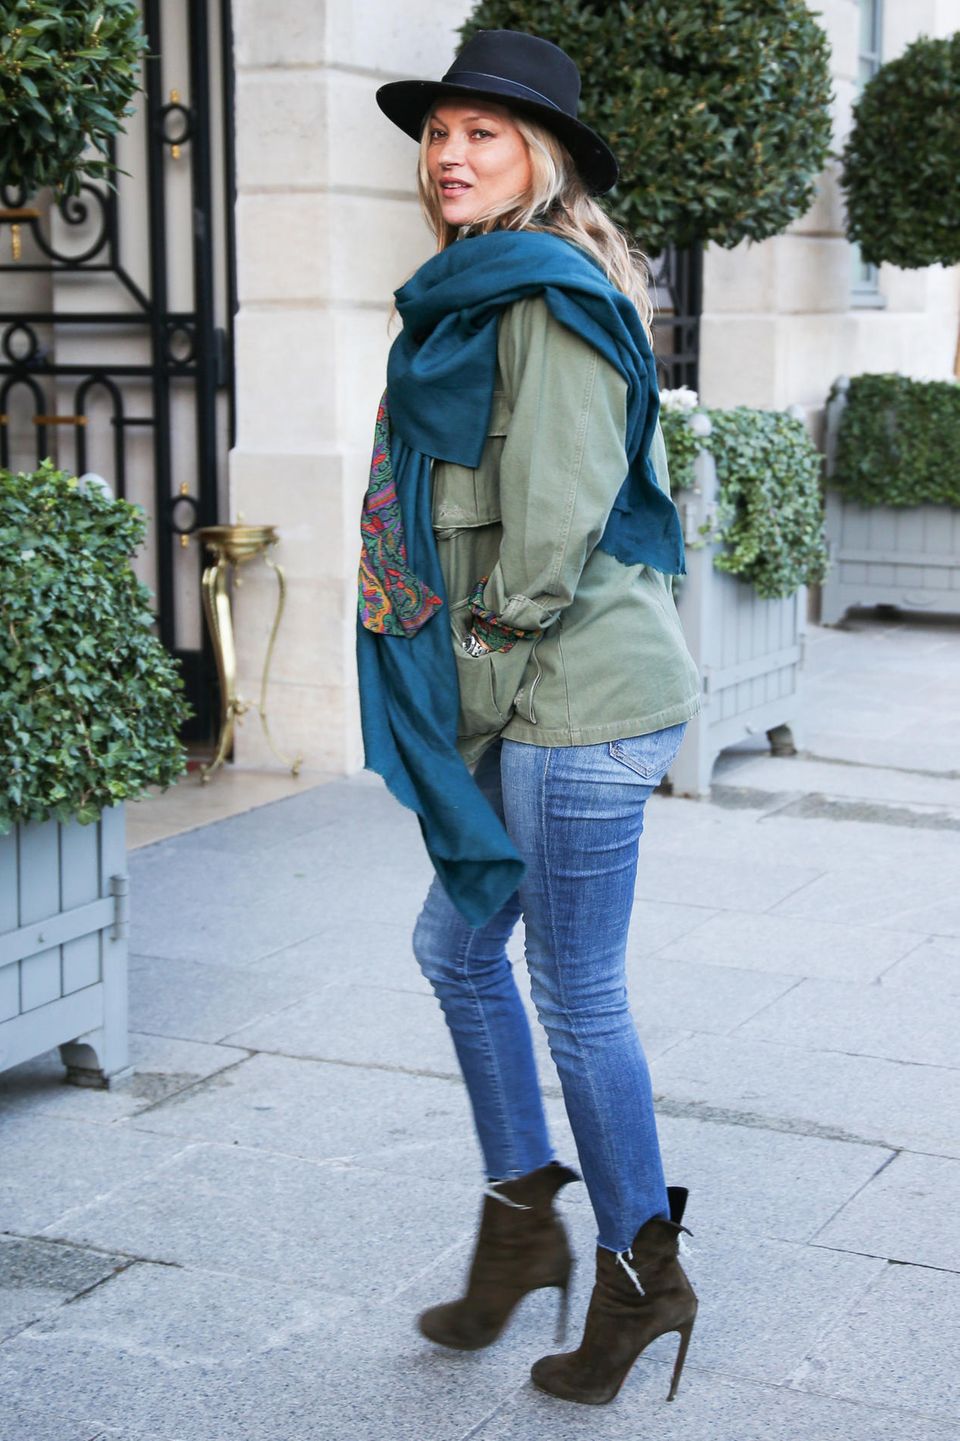 Gibt es Tage, an denen Kate Moss nicht cool aussieht? Wohl kaum. Hier in lässiger Jeans, High Heels und mit Hut